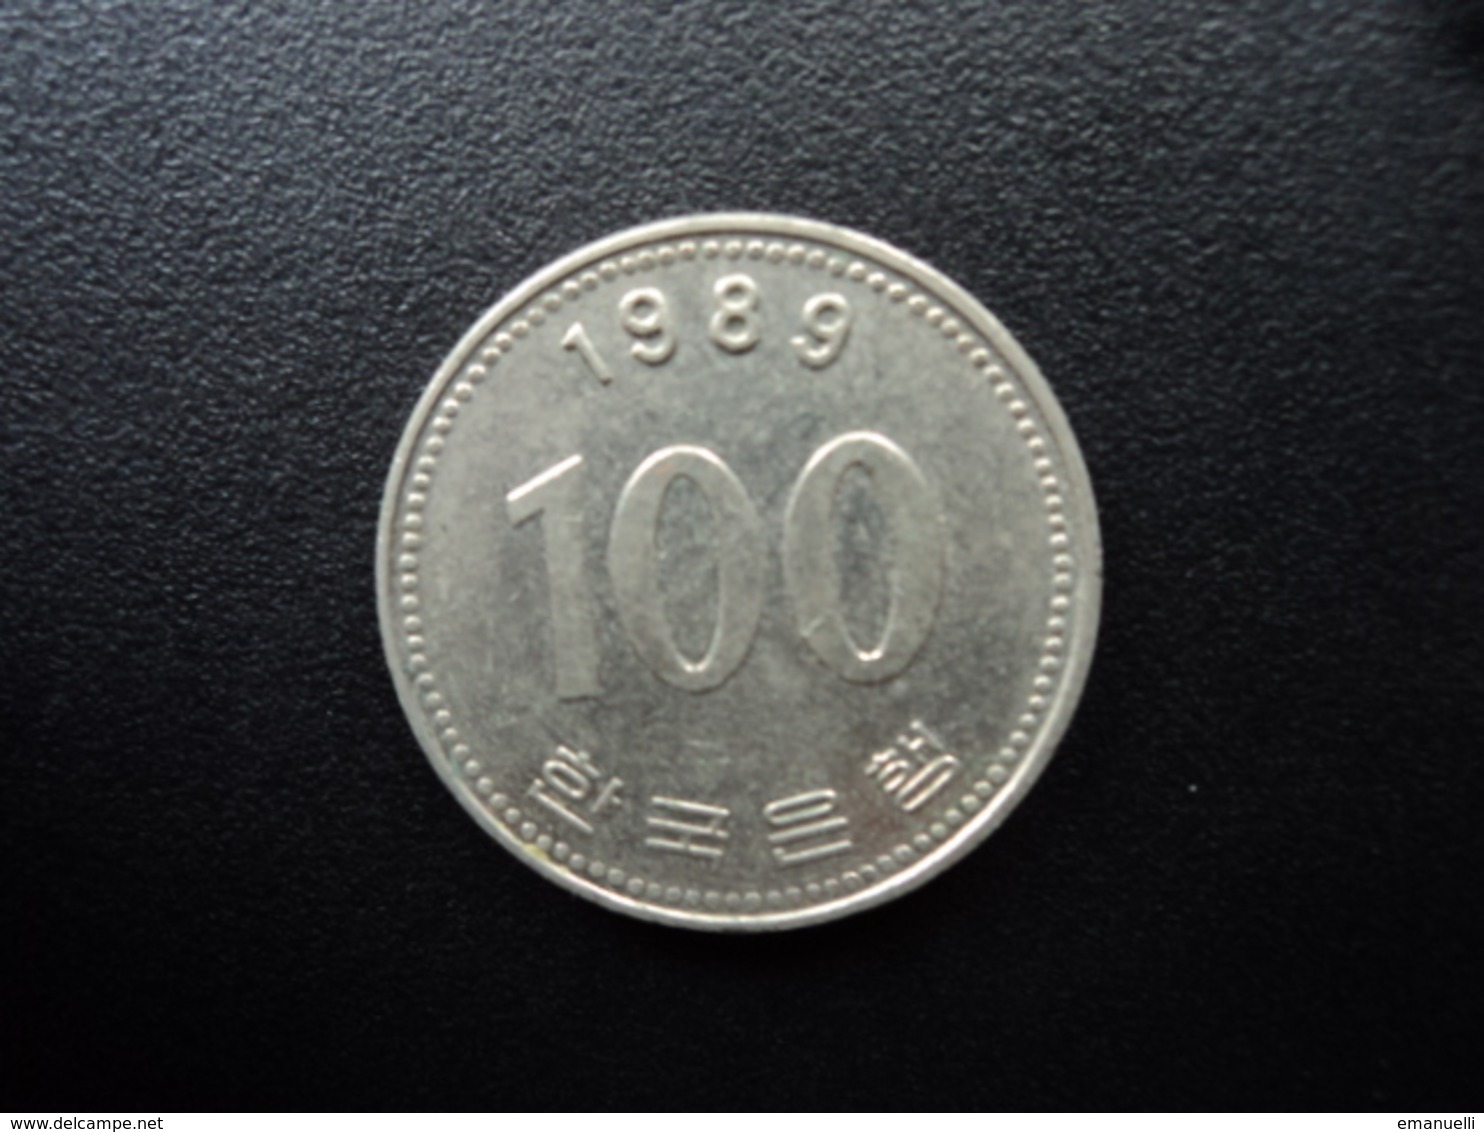 CORÉE DU SUD : 100 WON   1989   KM 35.2    SUP - Korea, South